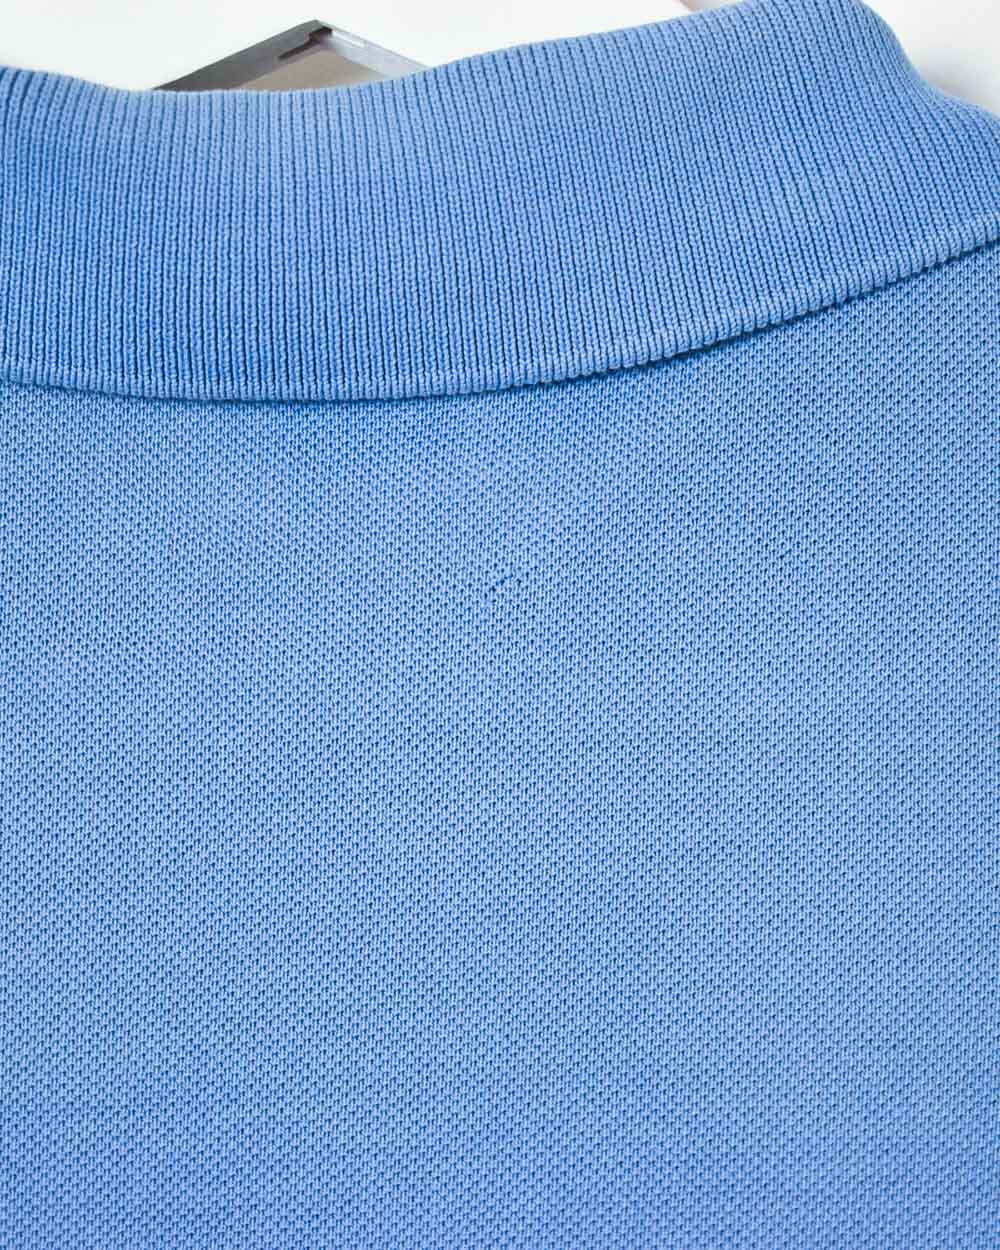 Blue Chemise Lacoste Polo Shirt - Large